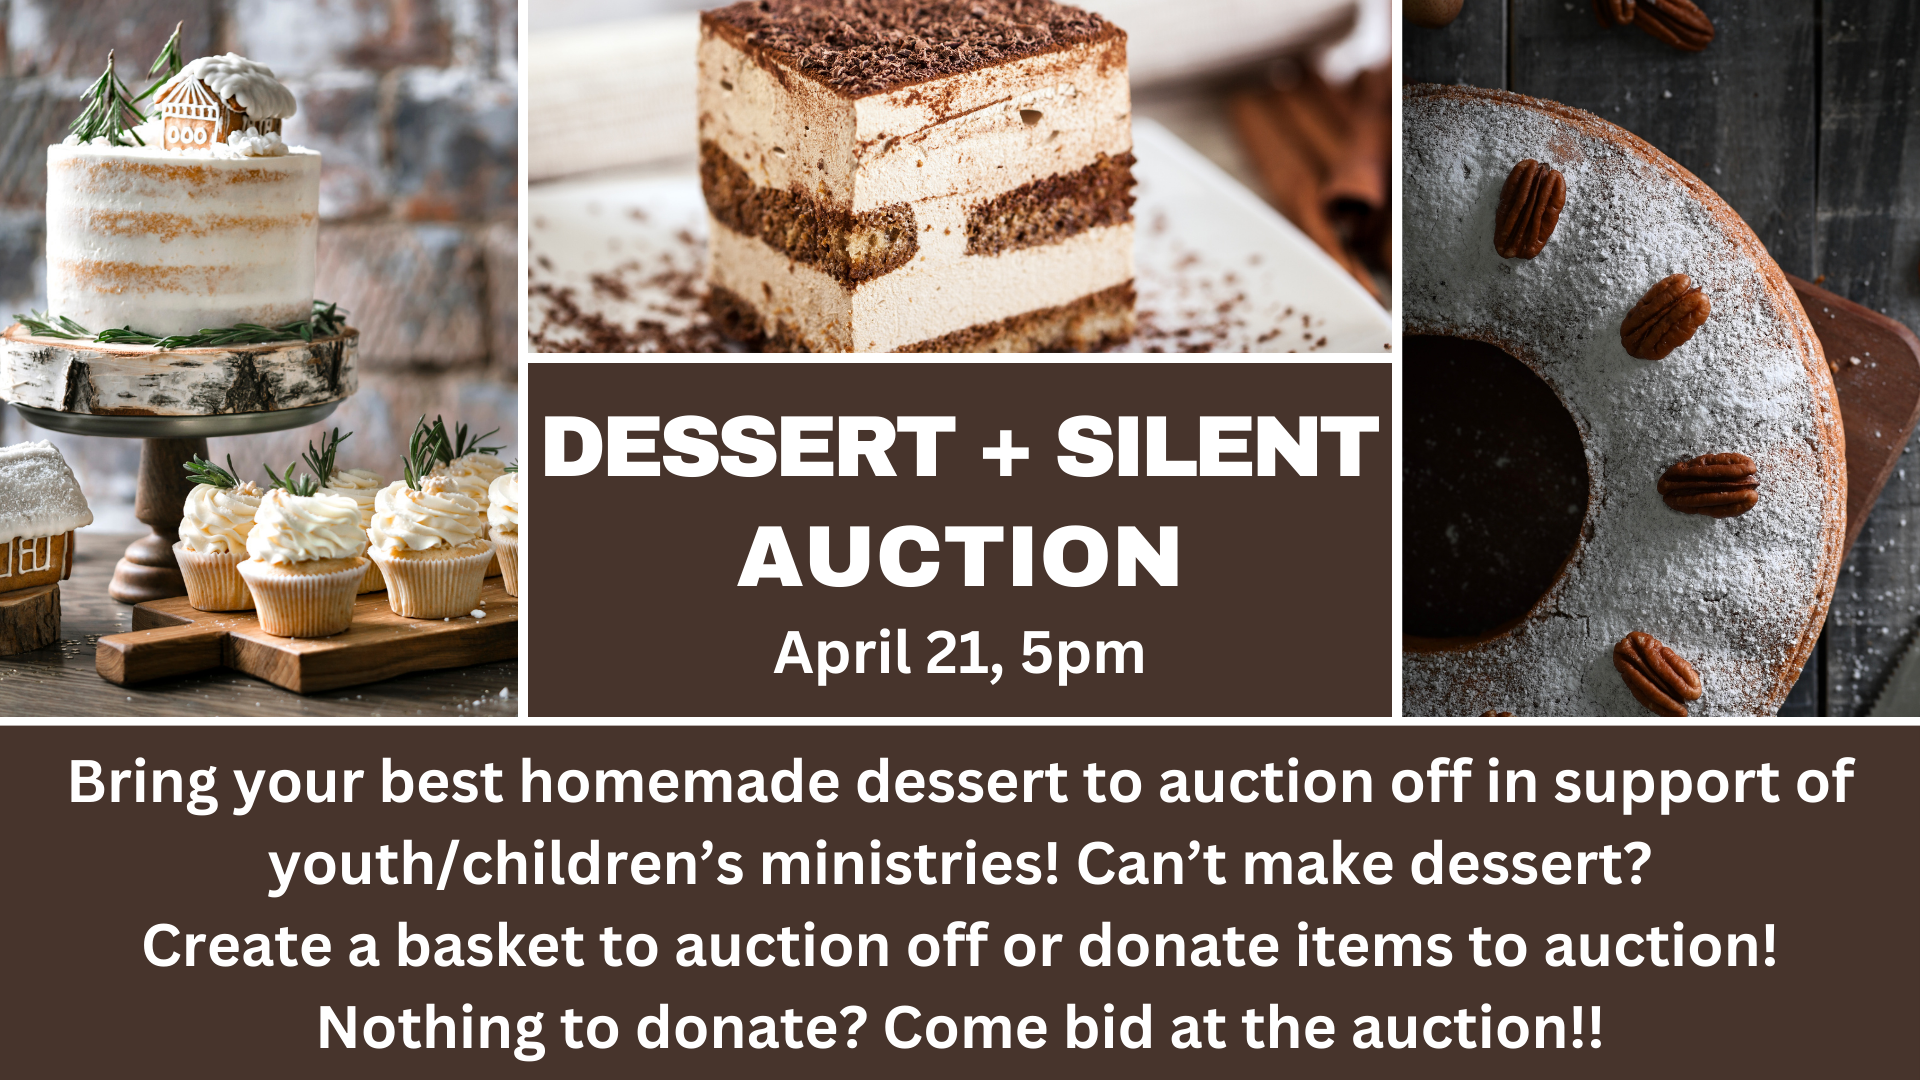 Dessert auction April 21